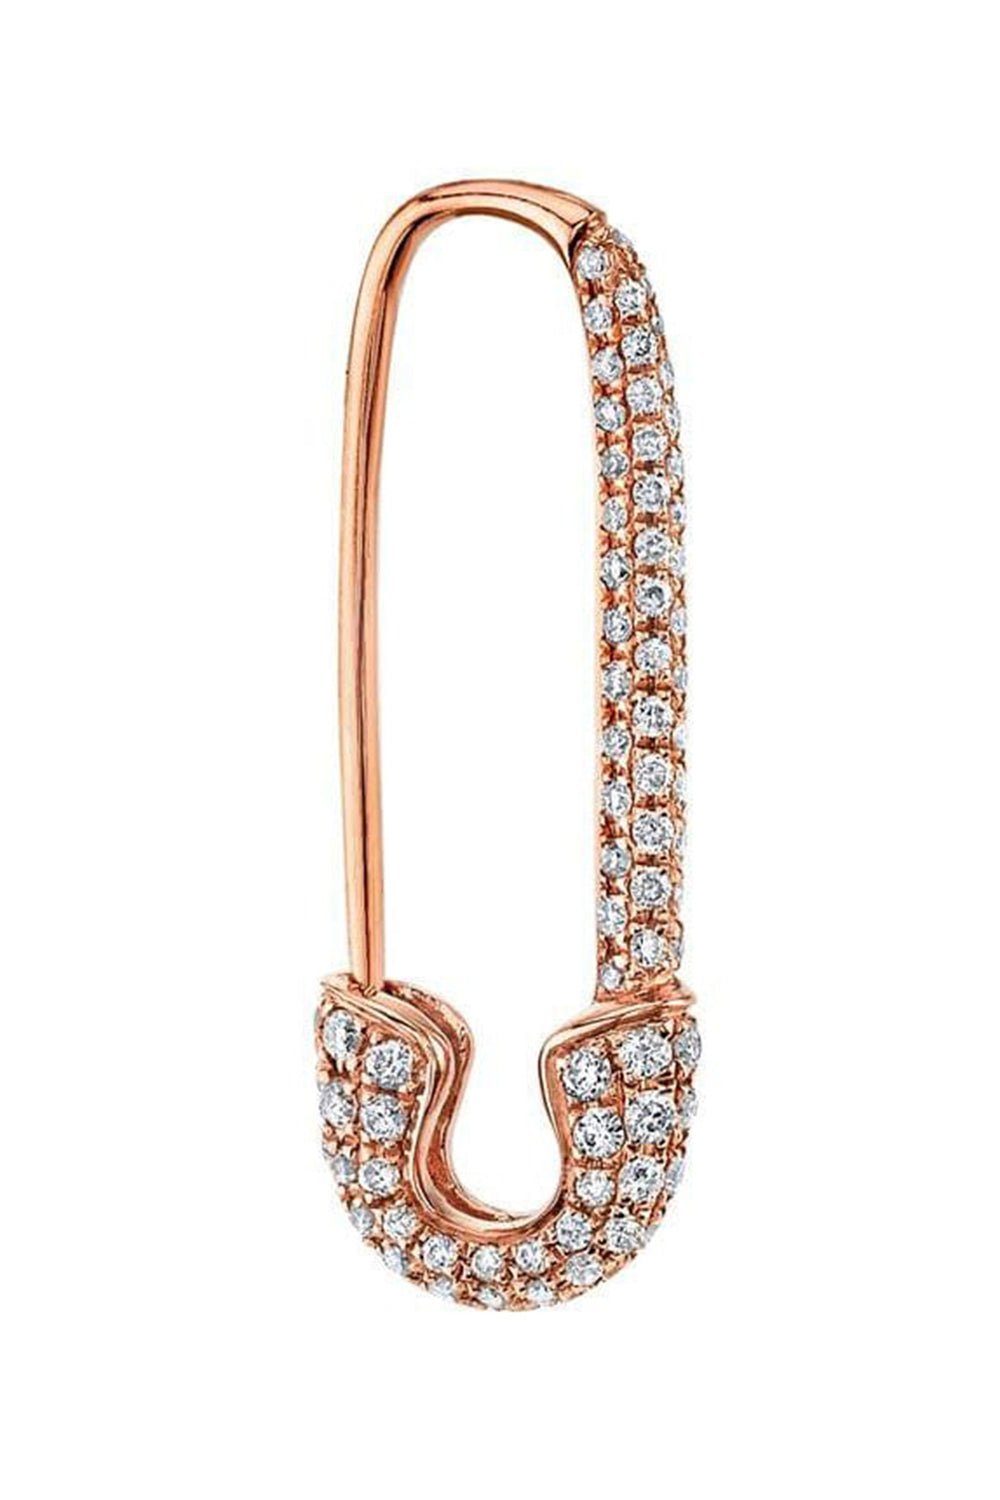 ANITA KO-Rose Gold Diamond Safety Pin Earring-